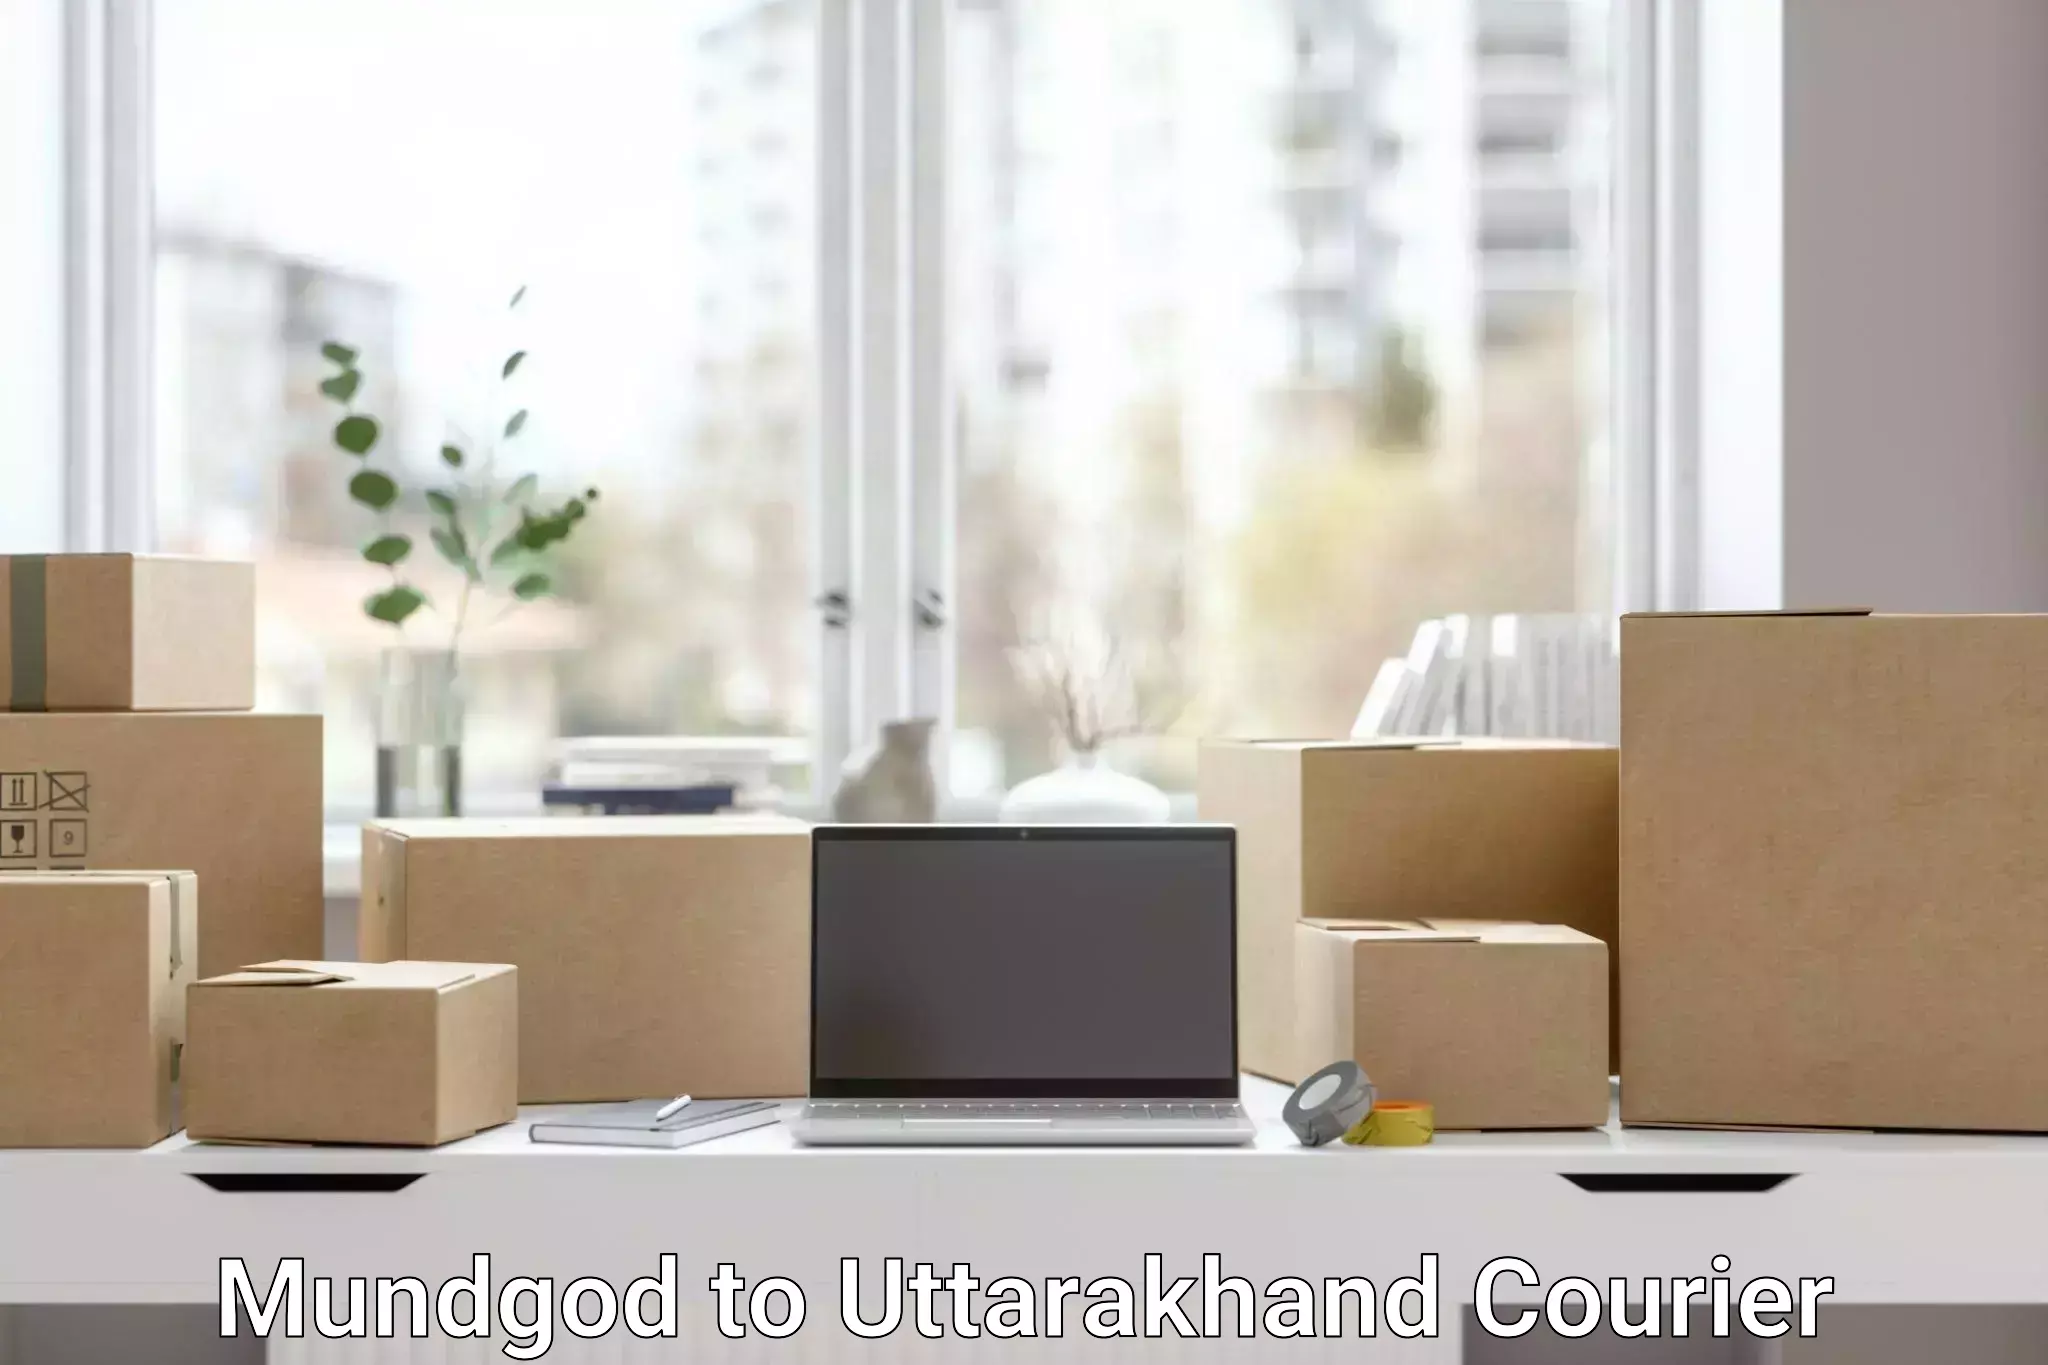 Courier rate comparison Mundgod to Uttarakhand